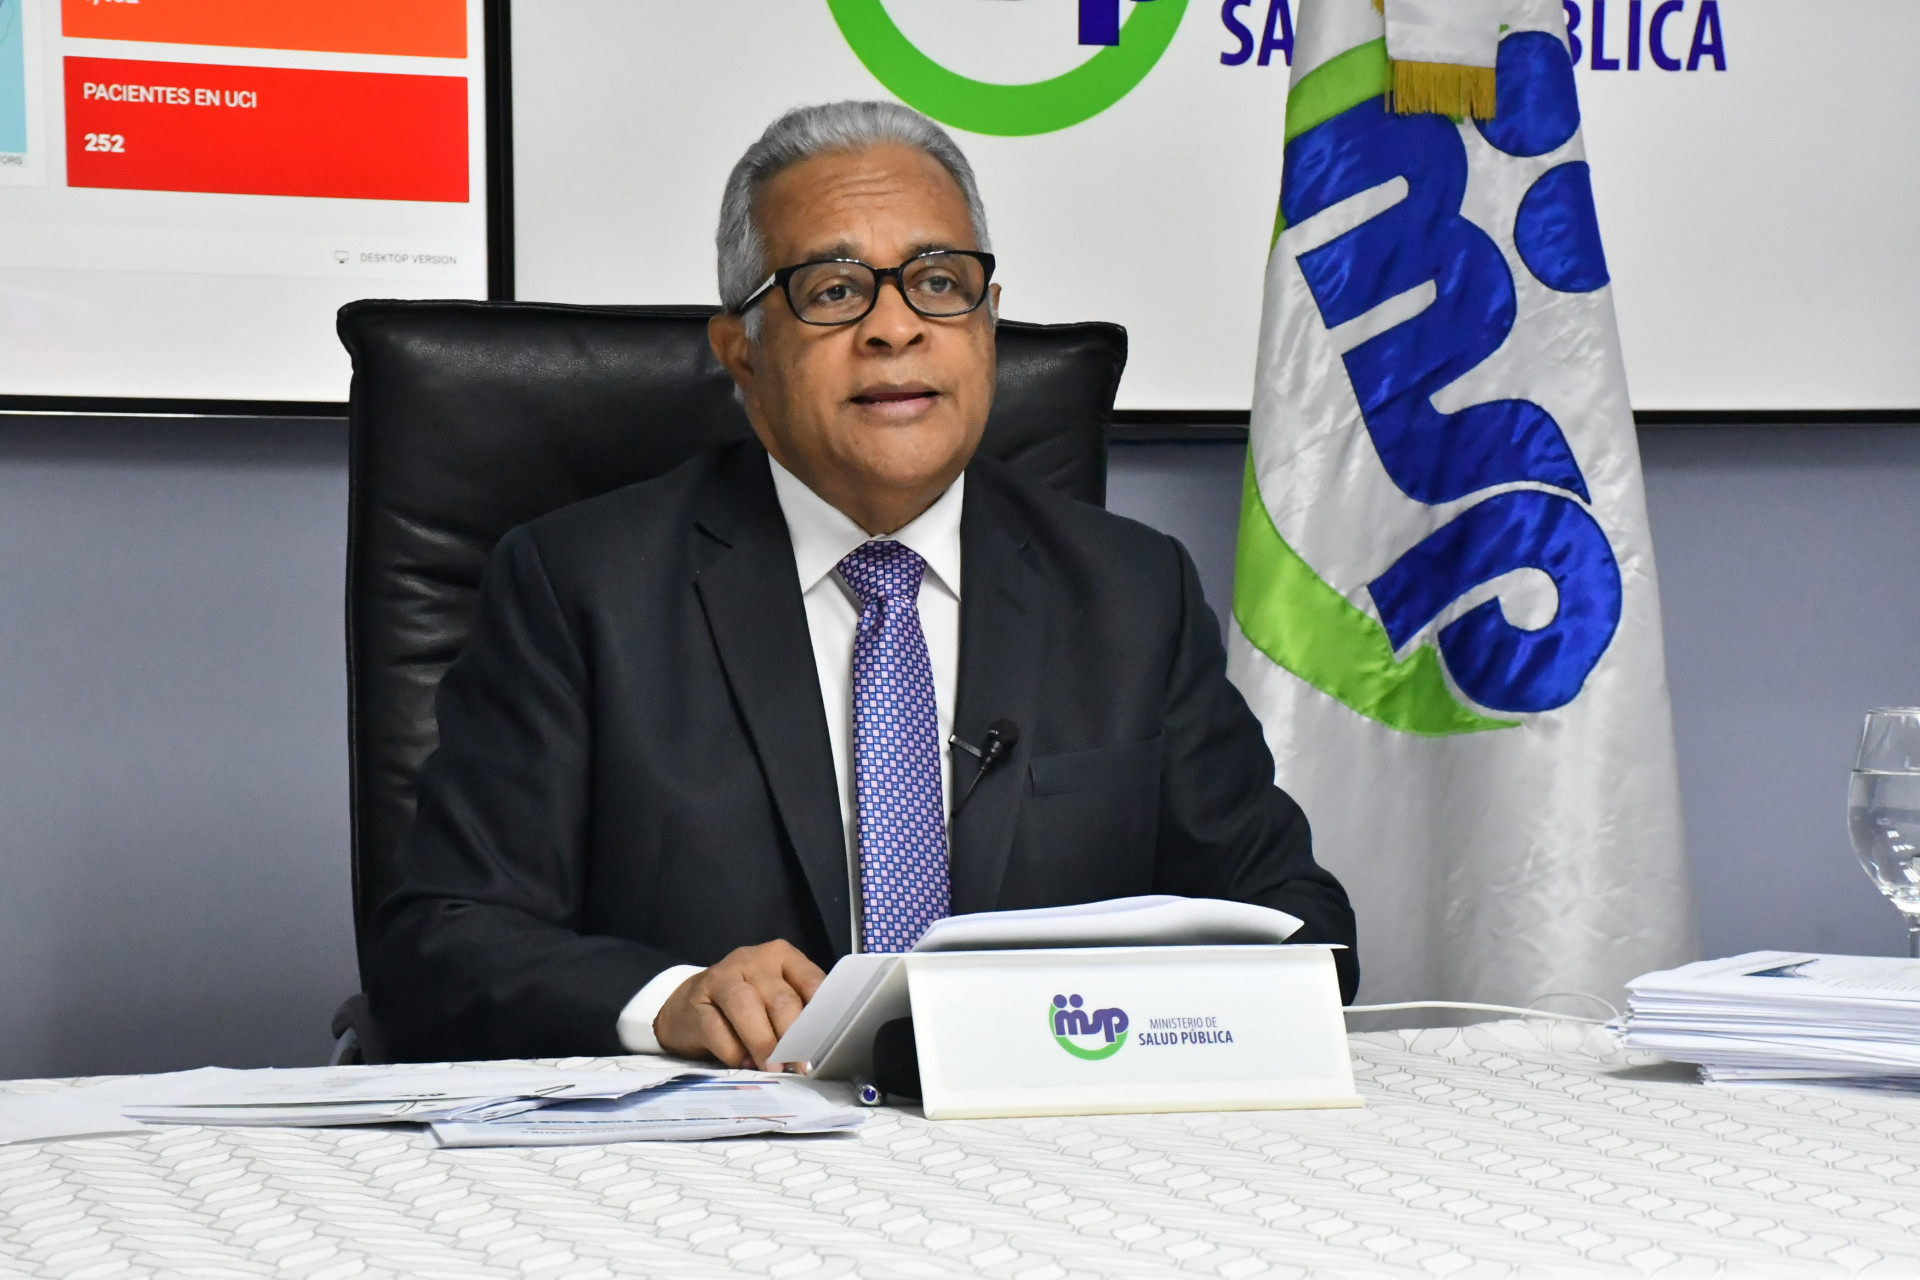 REPÚBLICA DOMINICANA: Salud Pública realizará operativos para eliminar plagas en zonas afectadas por tormenta Isaías; recuperados de COVID-19 ascienden a 38,824